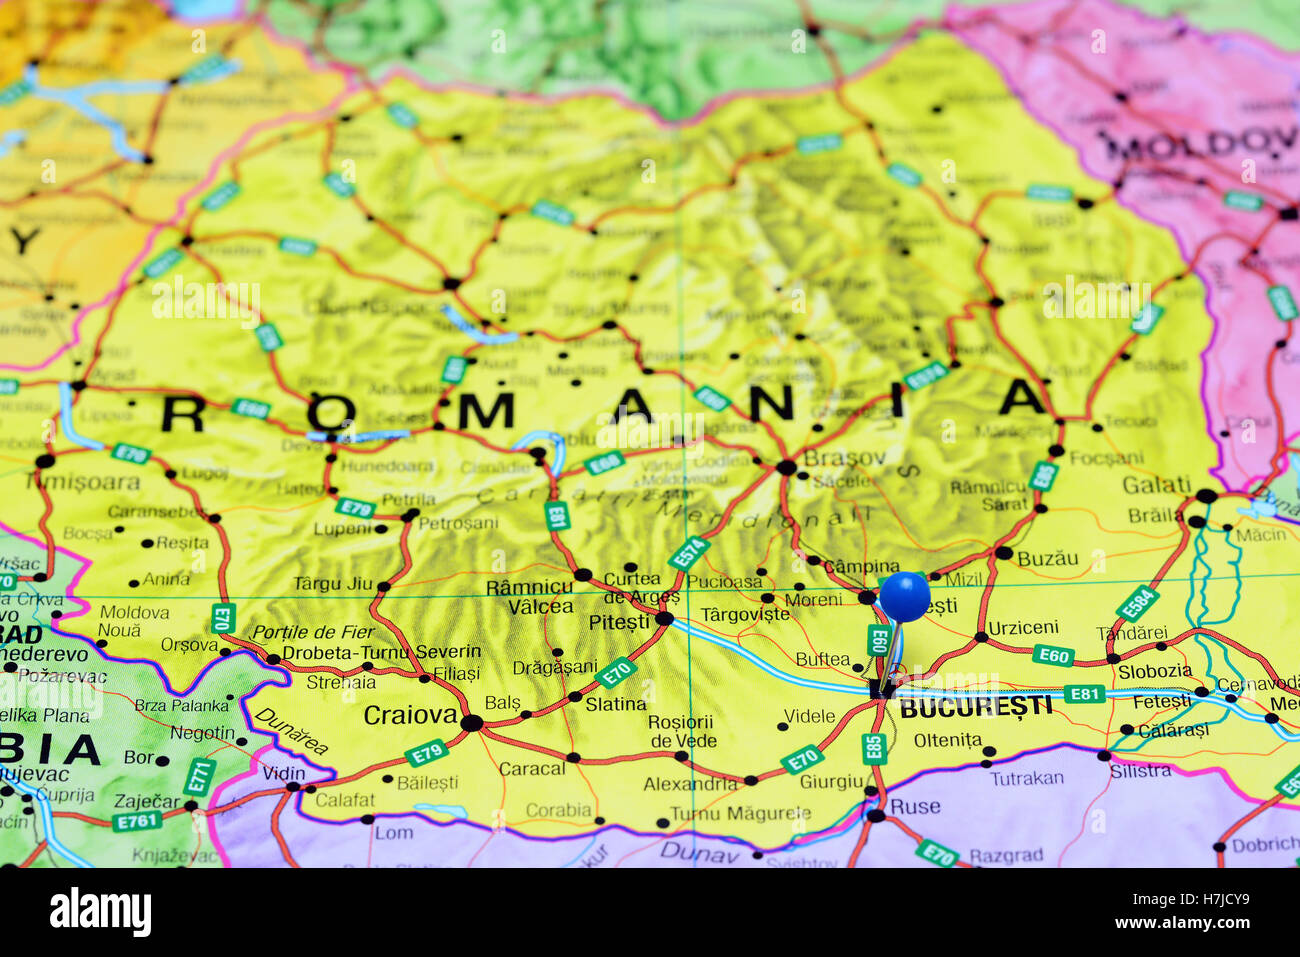 Bucarest épinglée sur une carte de la Roumanie Photo Stock - Alamy